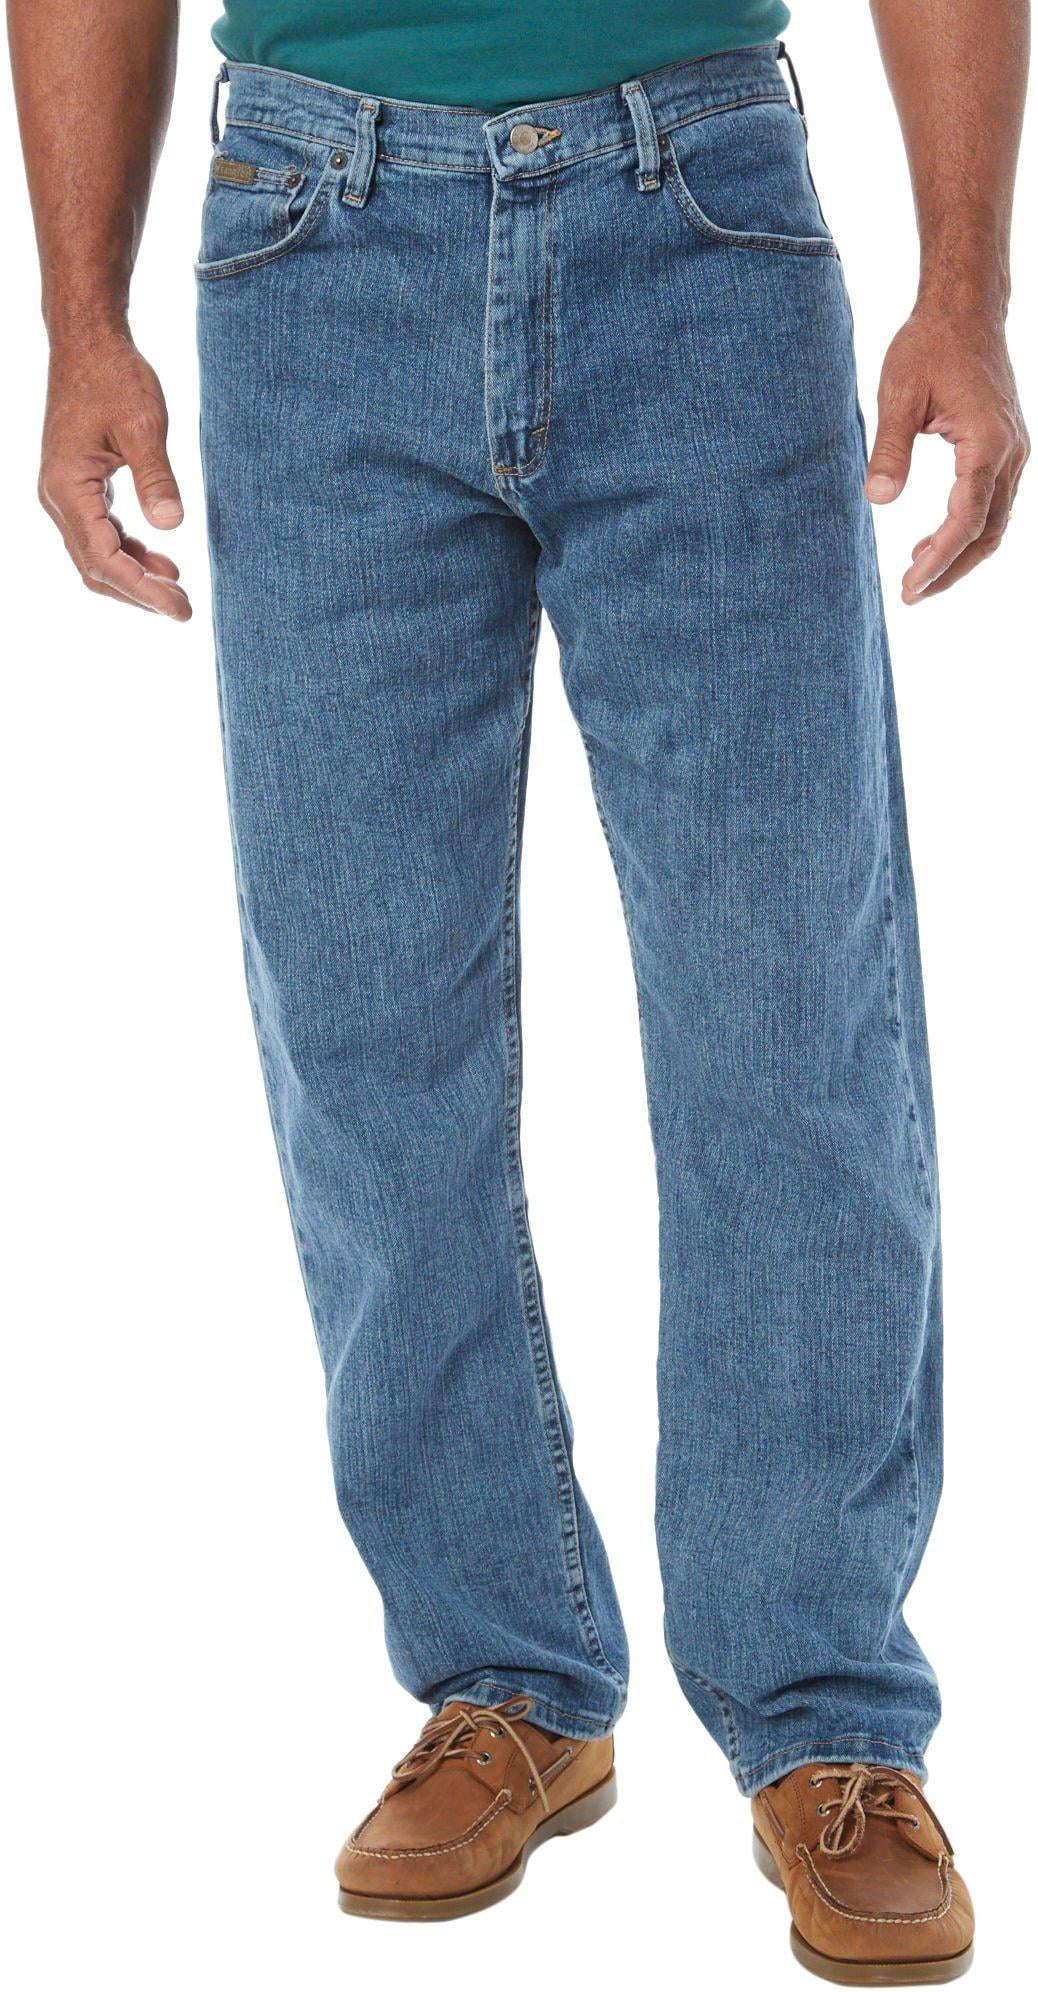 Wrangler Mens Advanced Comfort Jeans - Walmart.com